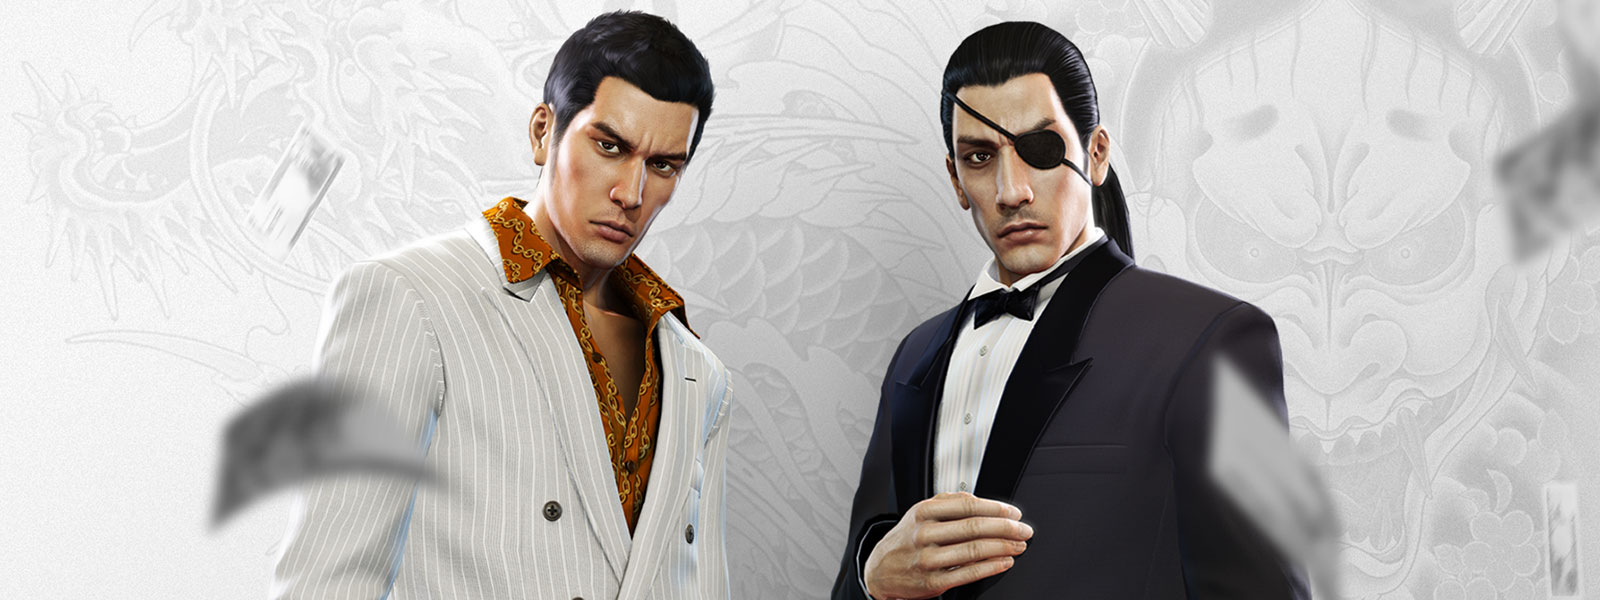 Dve postavy z hry Yakuza v elegantných oblekoch sa uprene pozerajú na to, ako všade okolo nich poletujú peniaze. V pozadí je bielo-sivý vytetovaný drak.